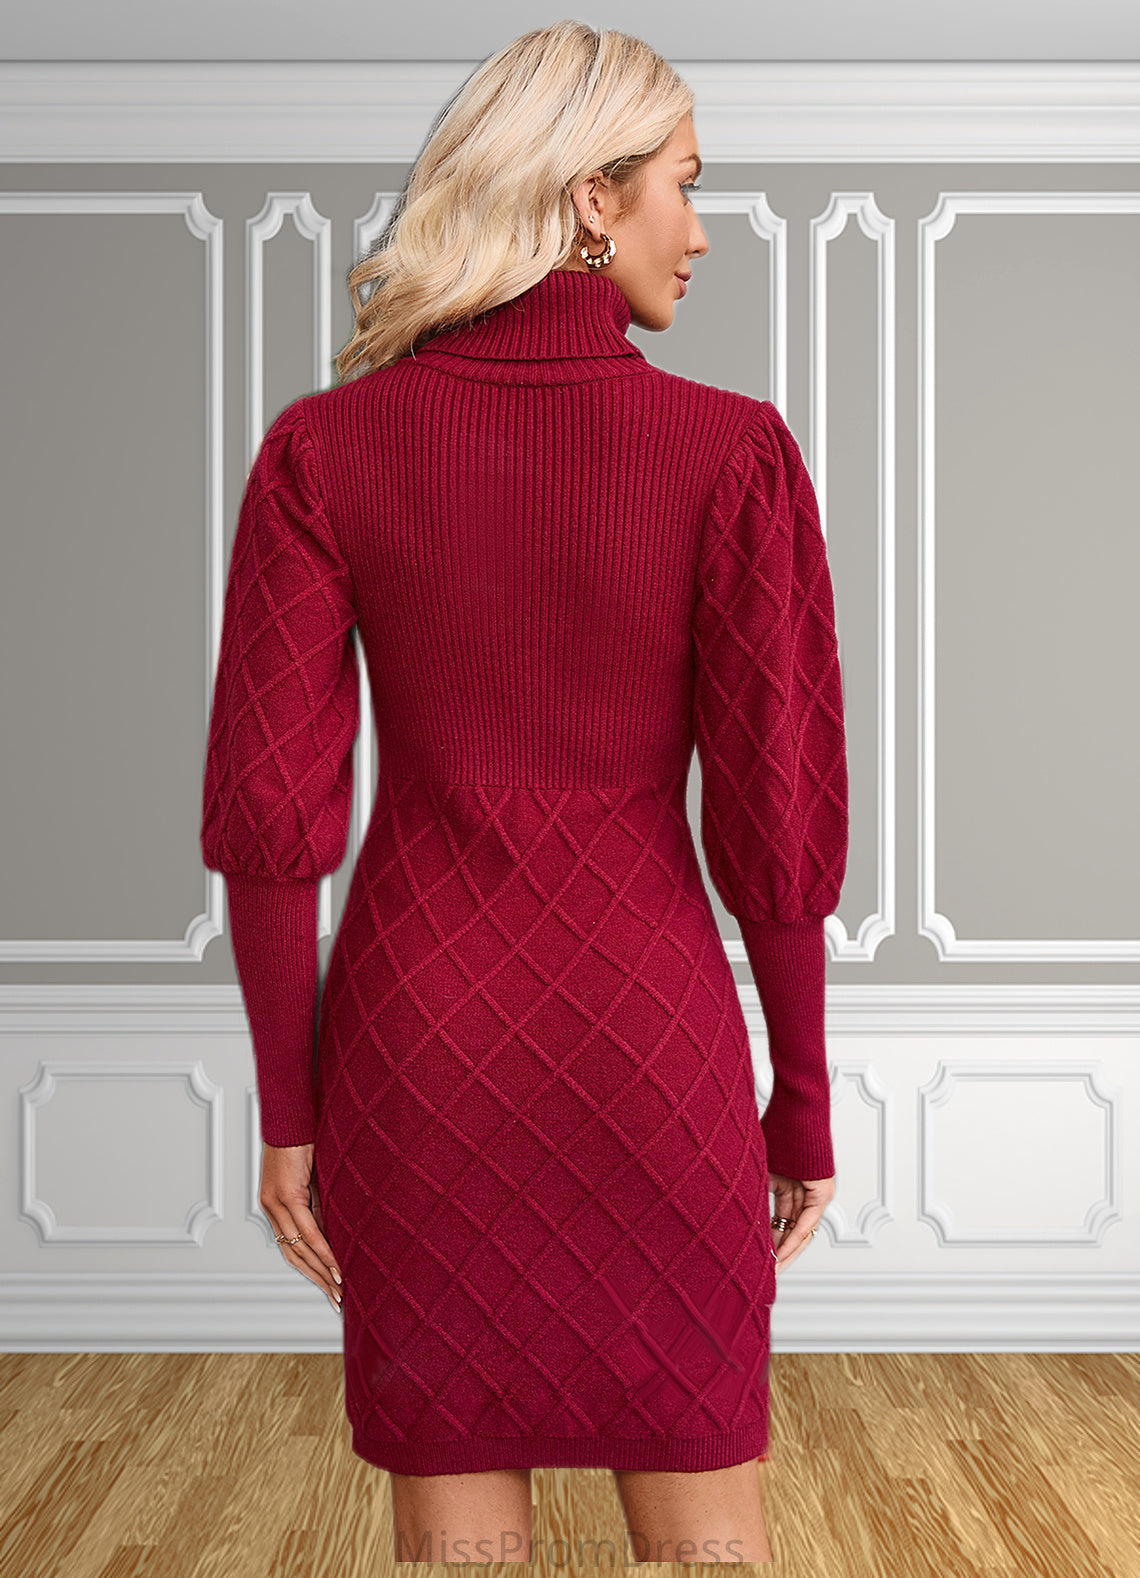 Claire High Neck Elegant Bodycon Cotton Blends Mini Dresses HMP0022559